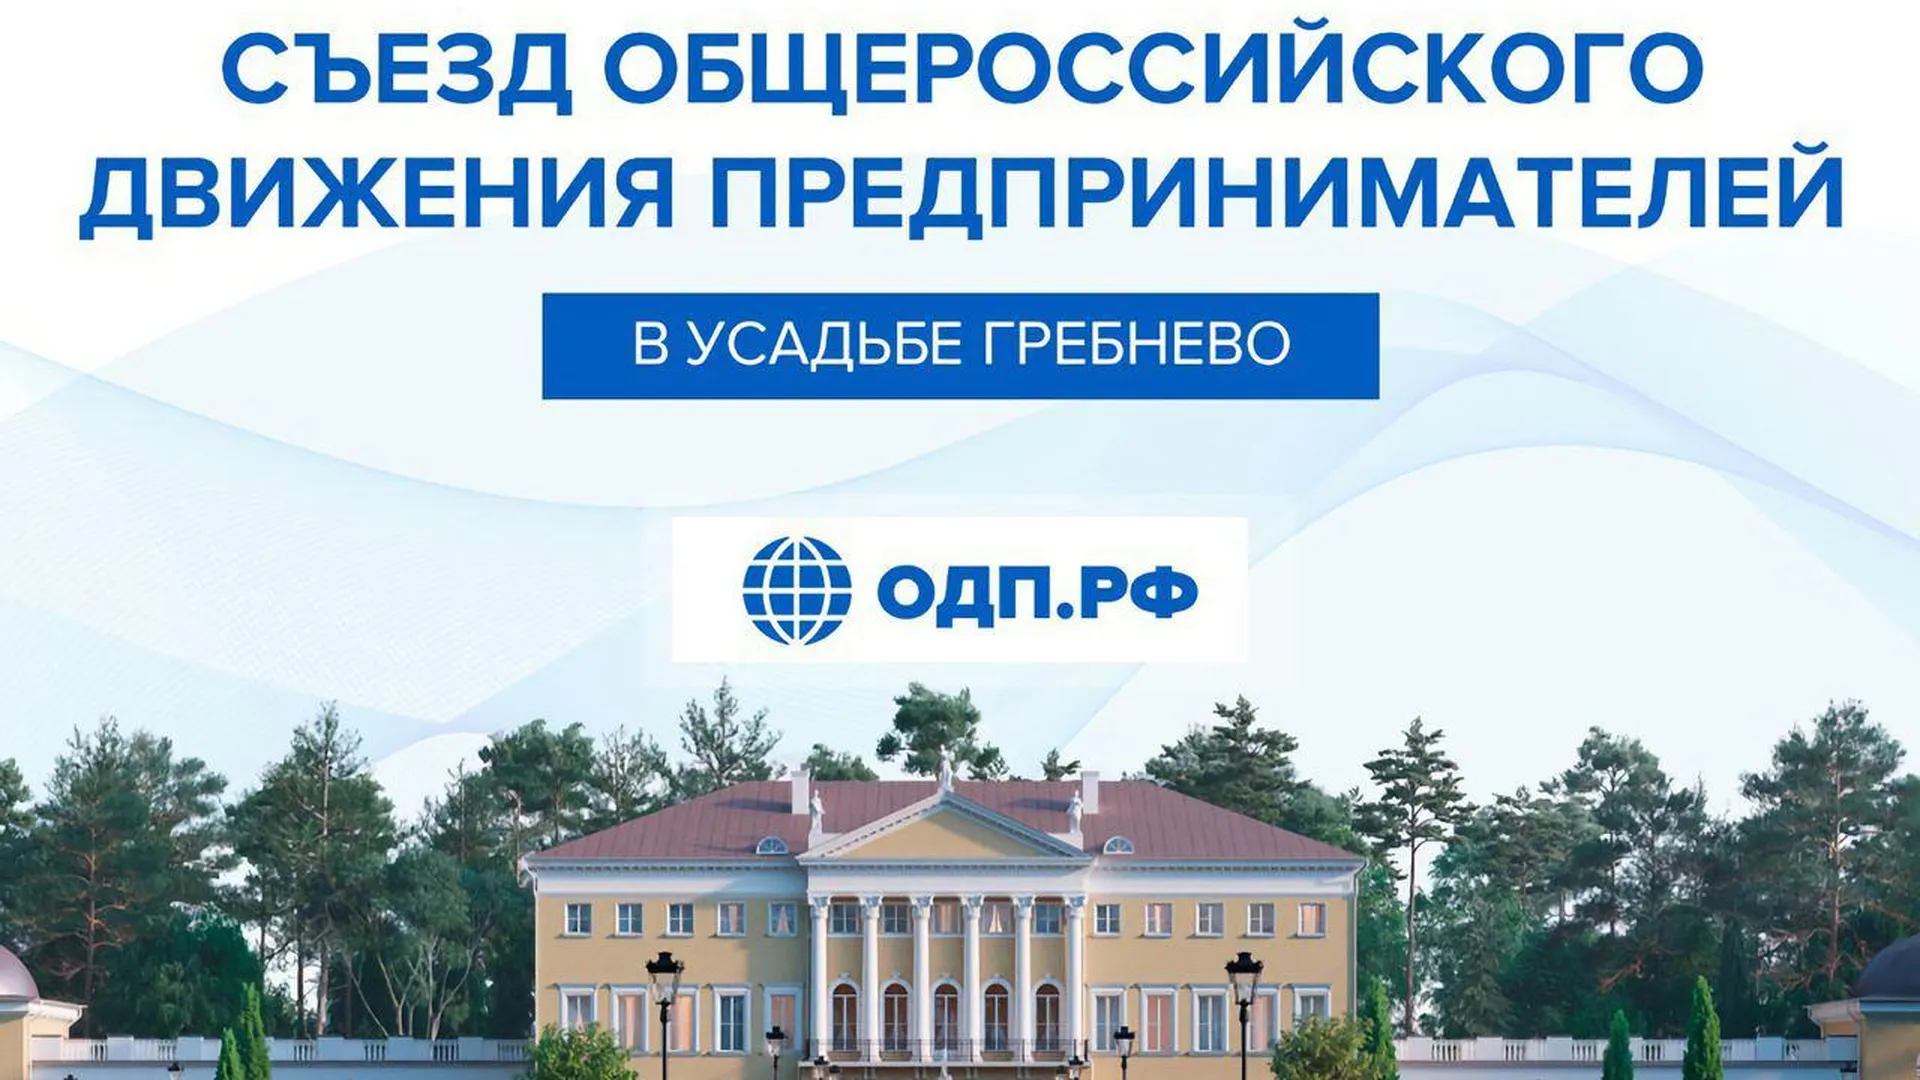 5 августа в Щелково состоится Съезд Общероссийского движения предпринимателей